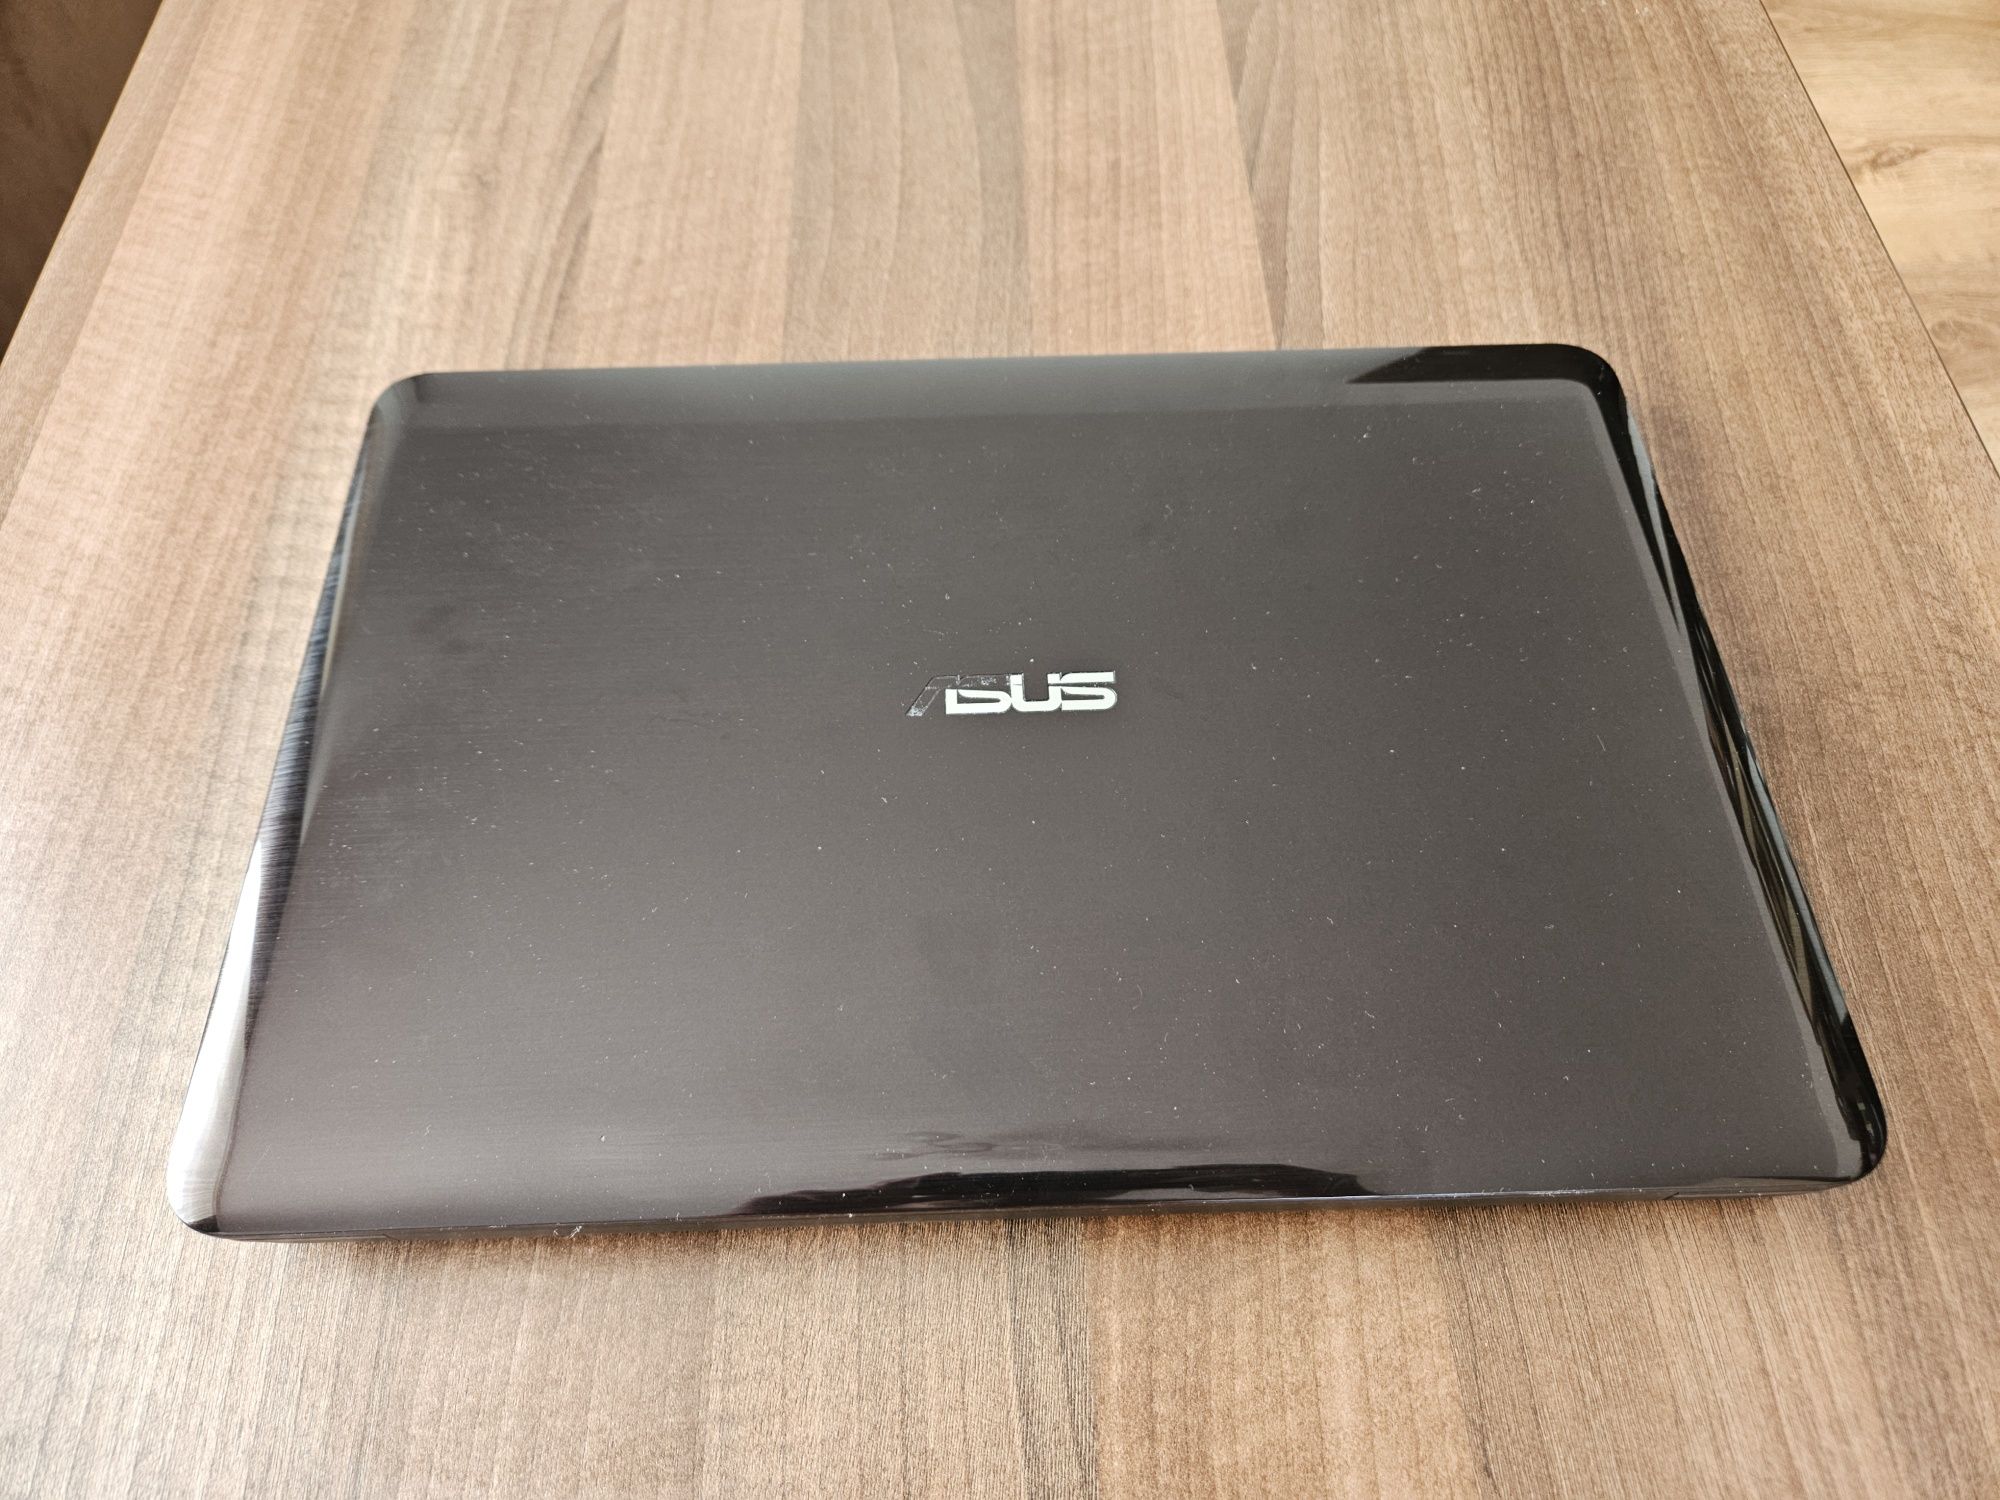 Laptop Asus X556U - i5-7200U, GeForce 940MX, 4GB RAM, 1TB HDD, Windows